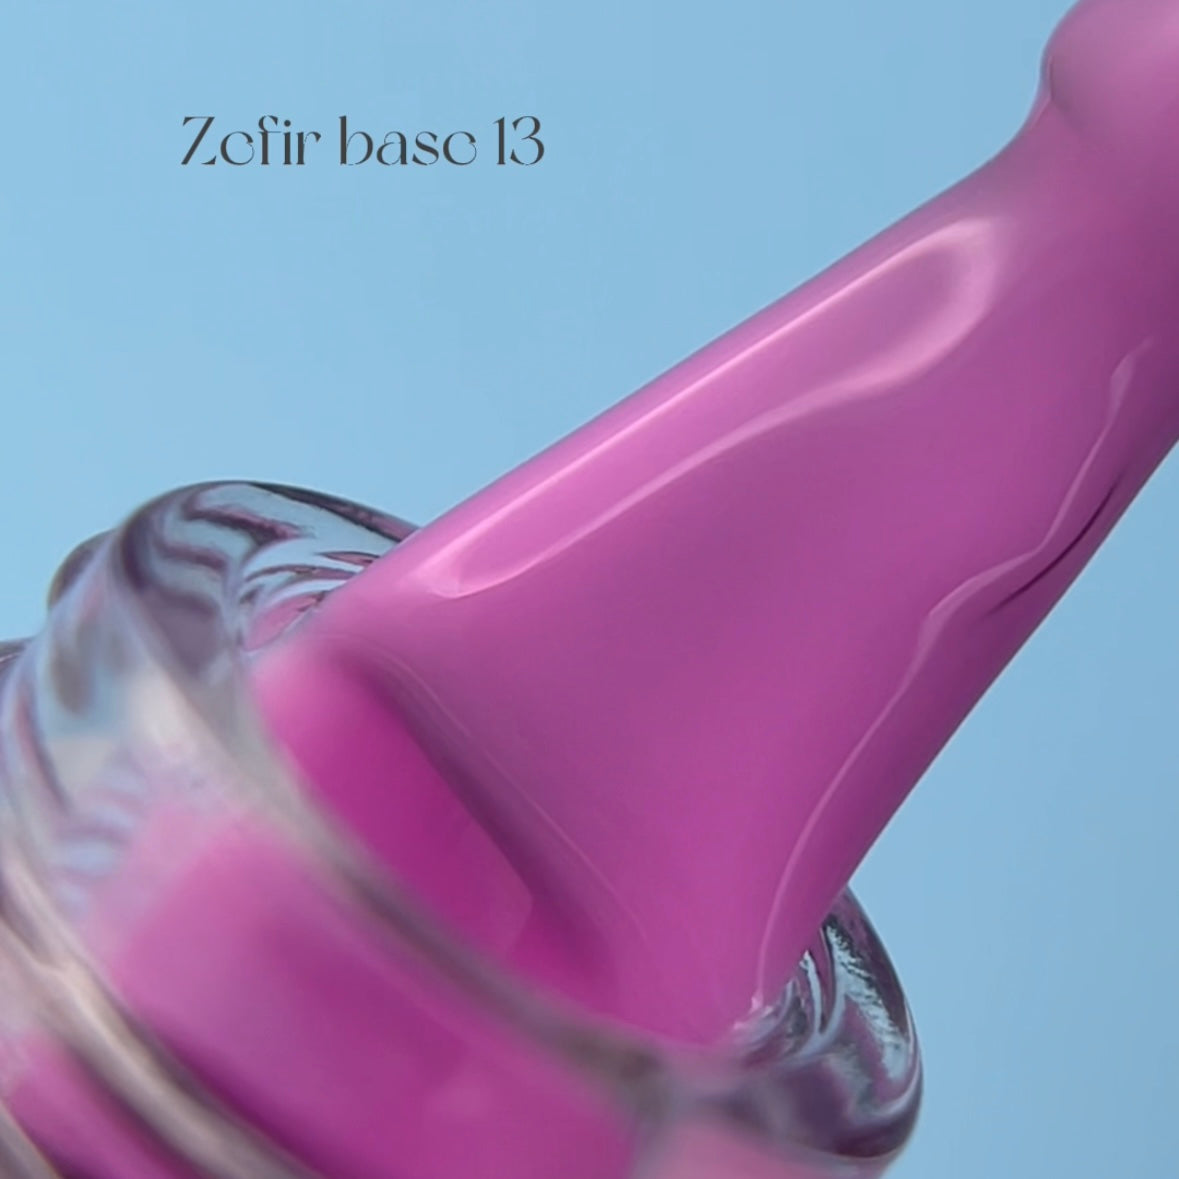 FARB Professional  ZEFIR RUBBER BASE #13, 15 ml